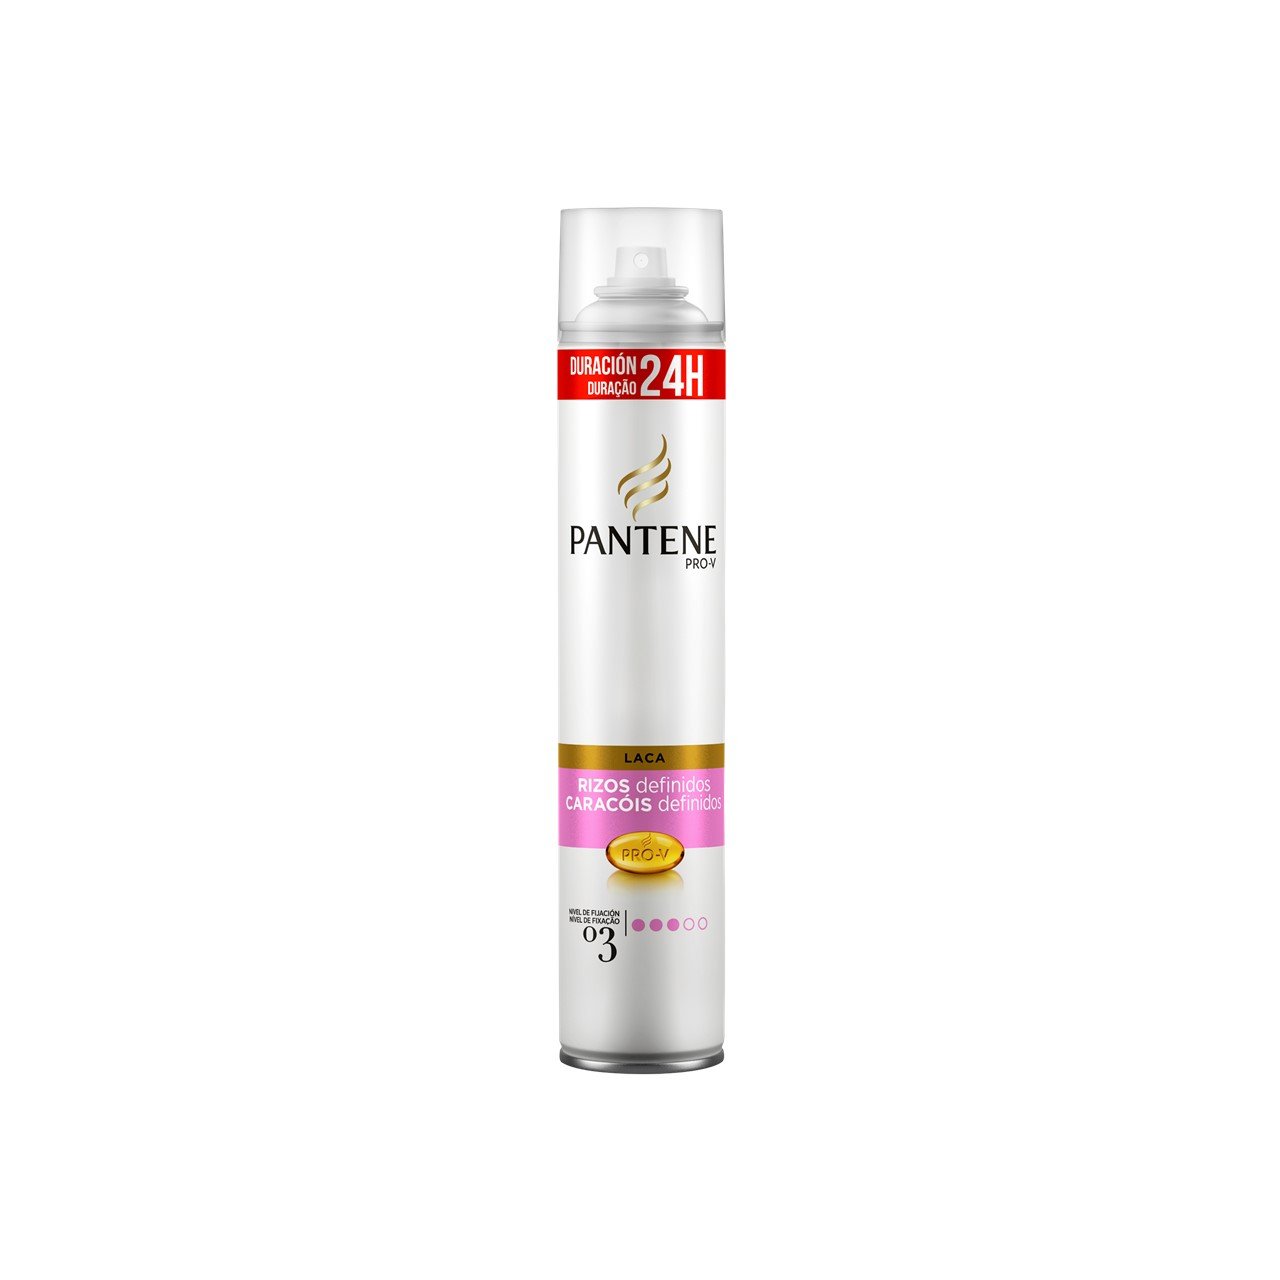 Buy Pantene Pro-V Defined Curls Hairspray 300ml · World Wide